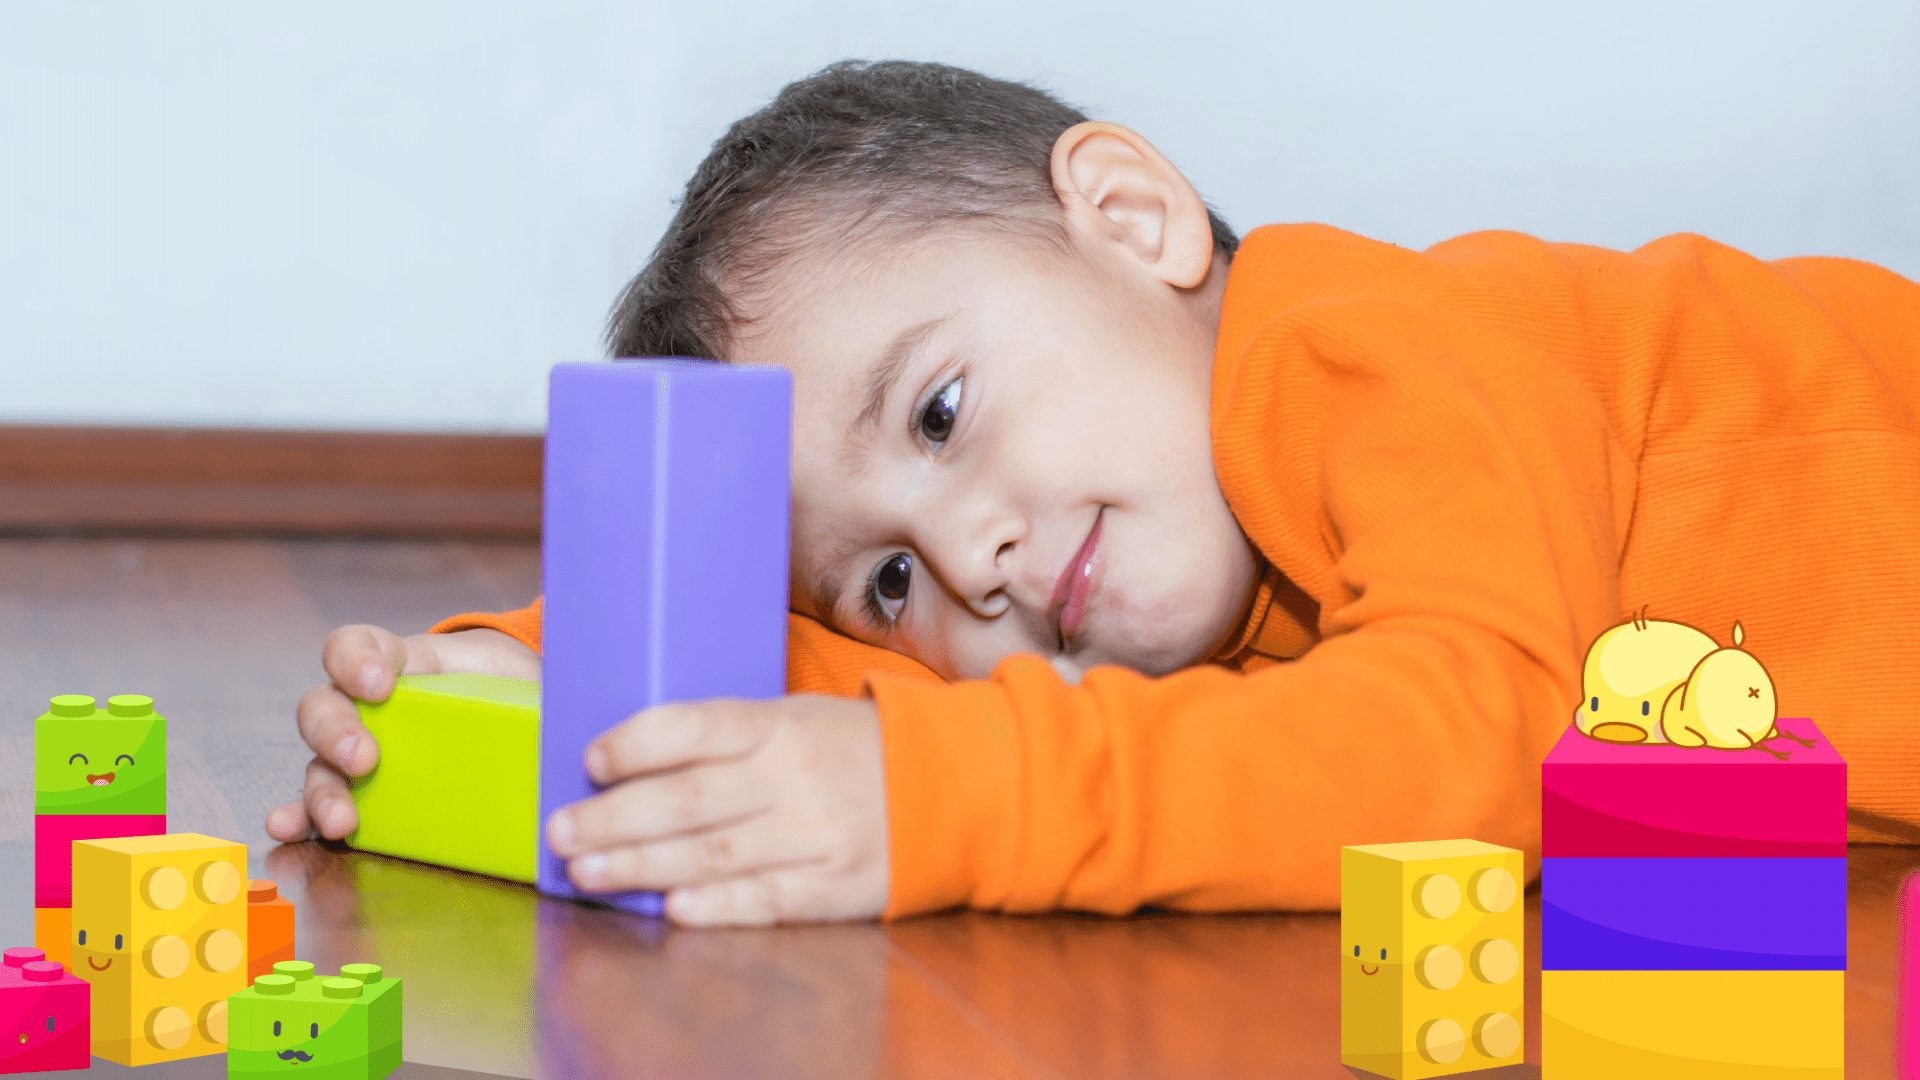 6 Sinais de alerta nos bebês e crianças para o Autismo